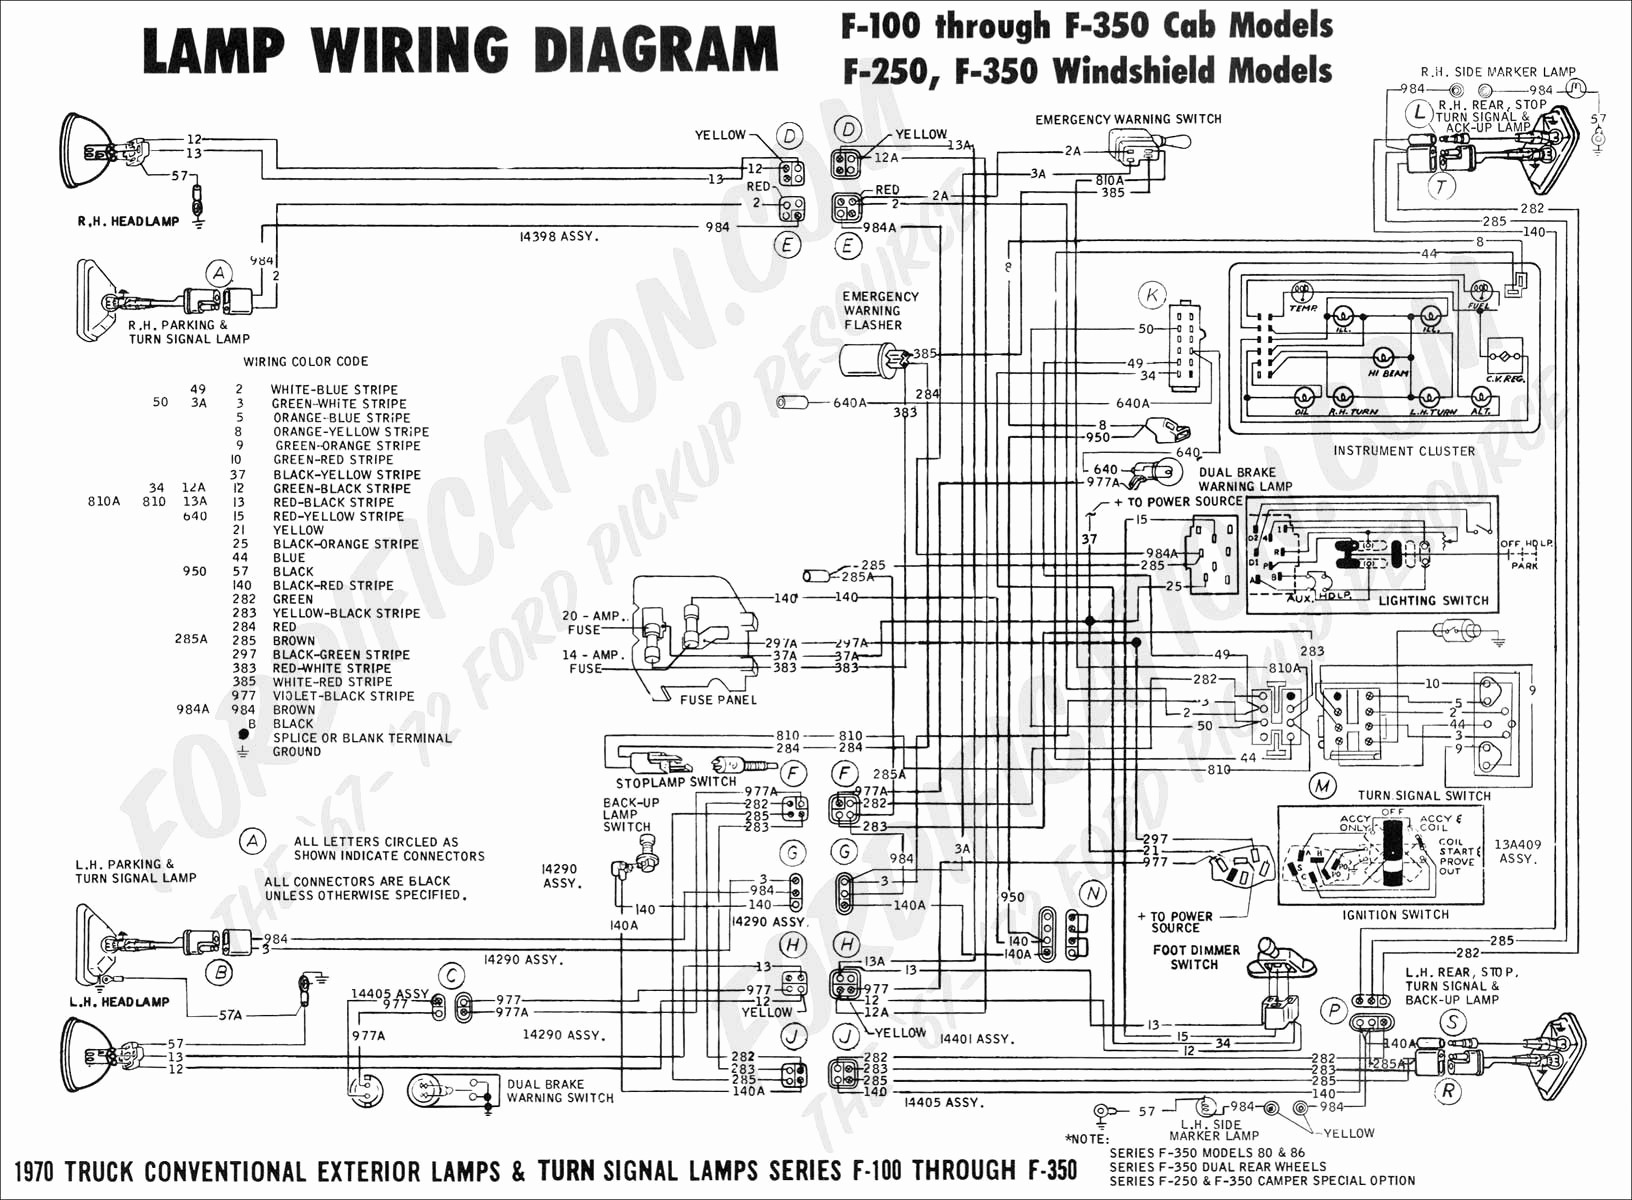 western snow plow solenoid wiring diagram Collection Full Size of Wiring Diagram Western Snow Plow